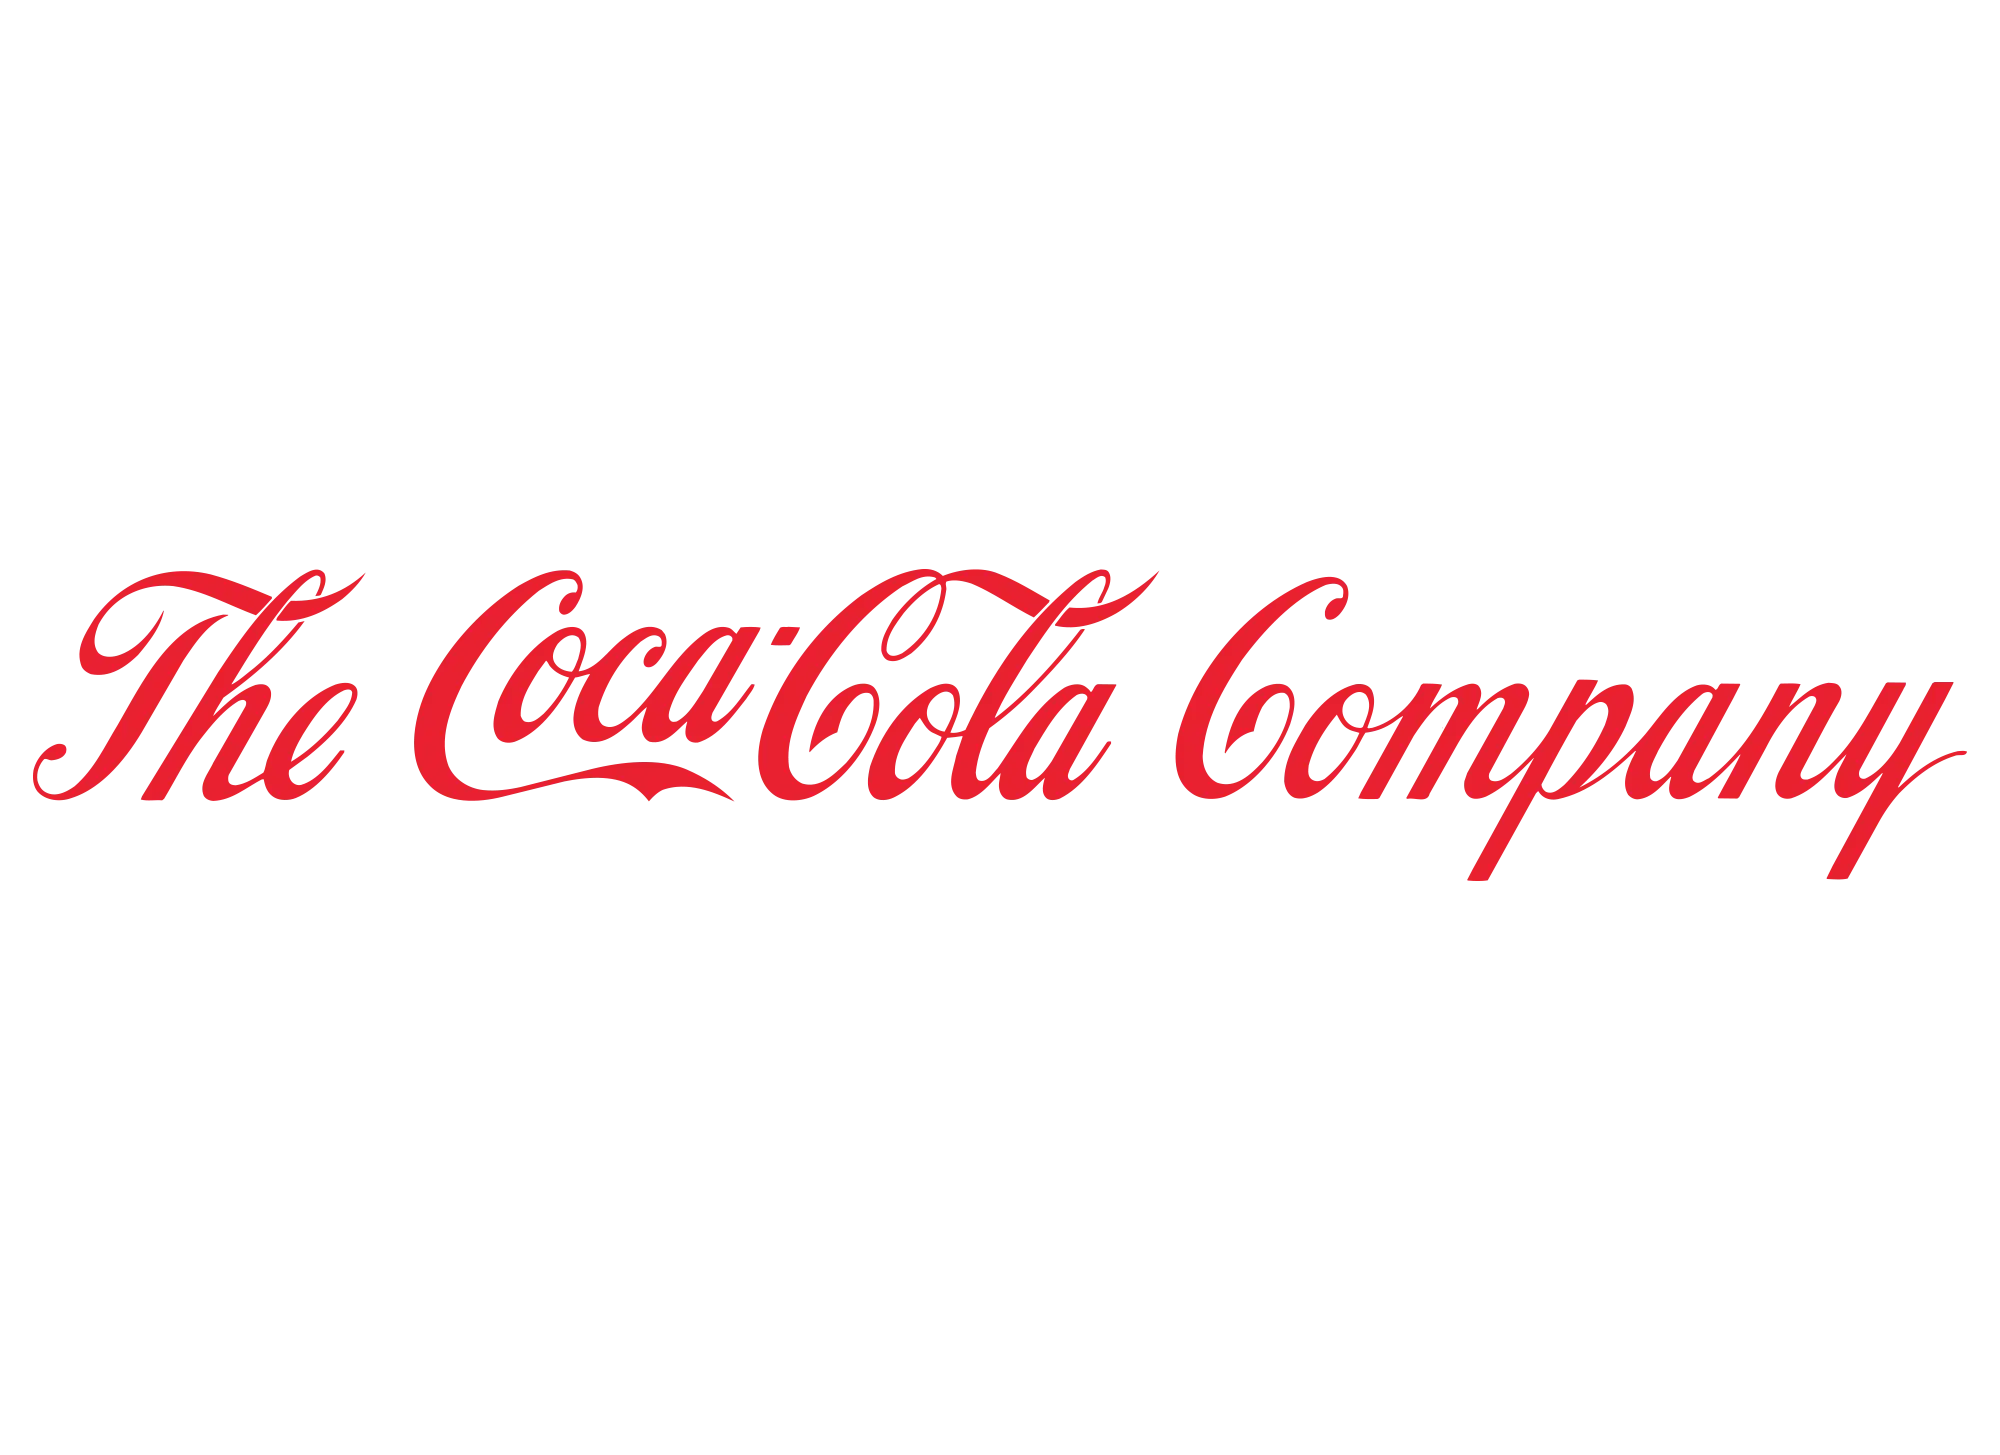 base_logos_0049_The_Coca-Cola_Company_logo